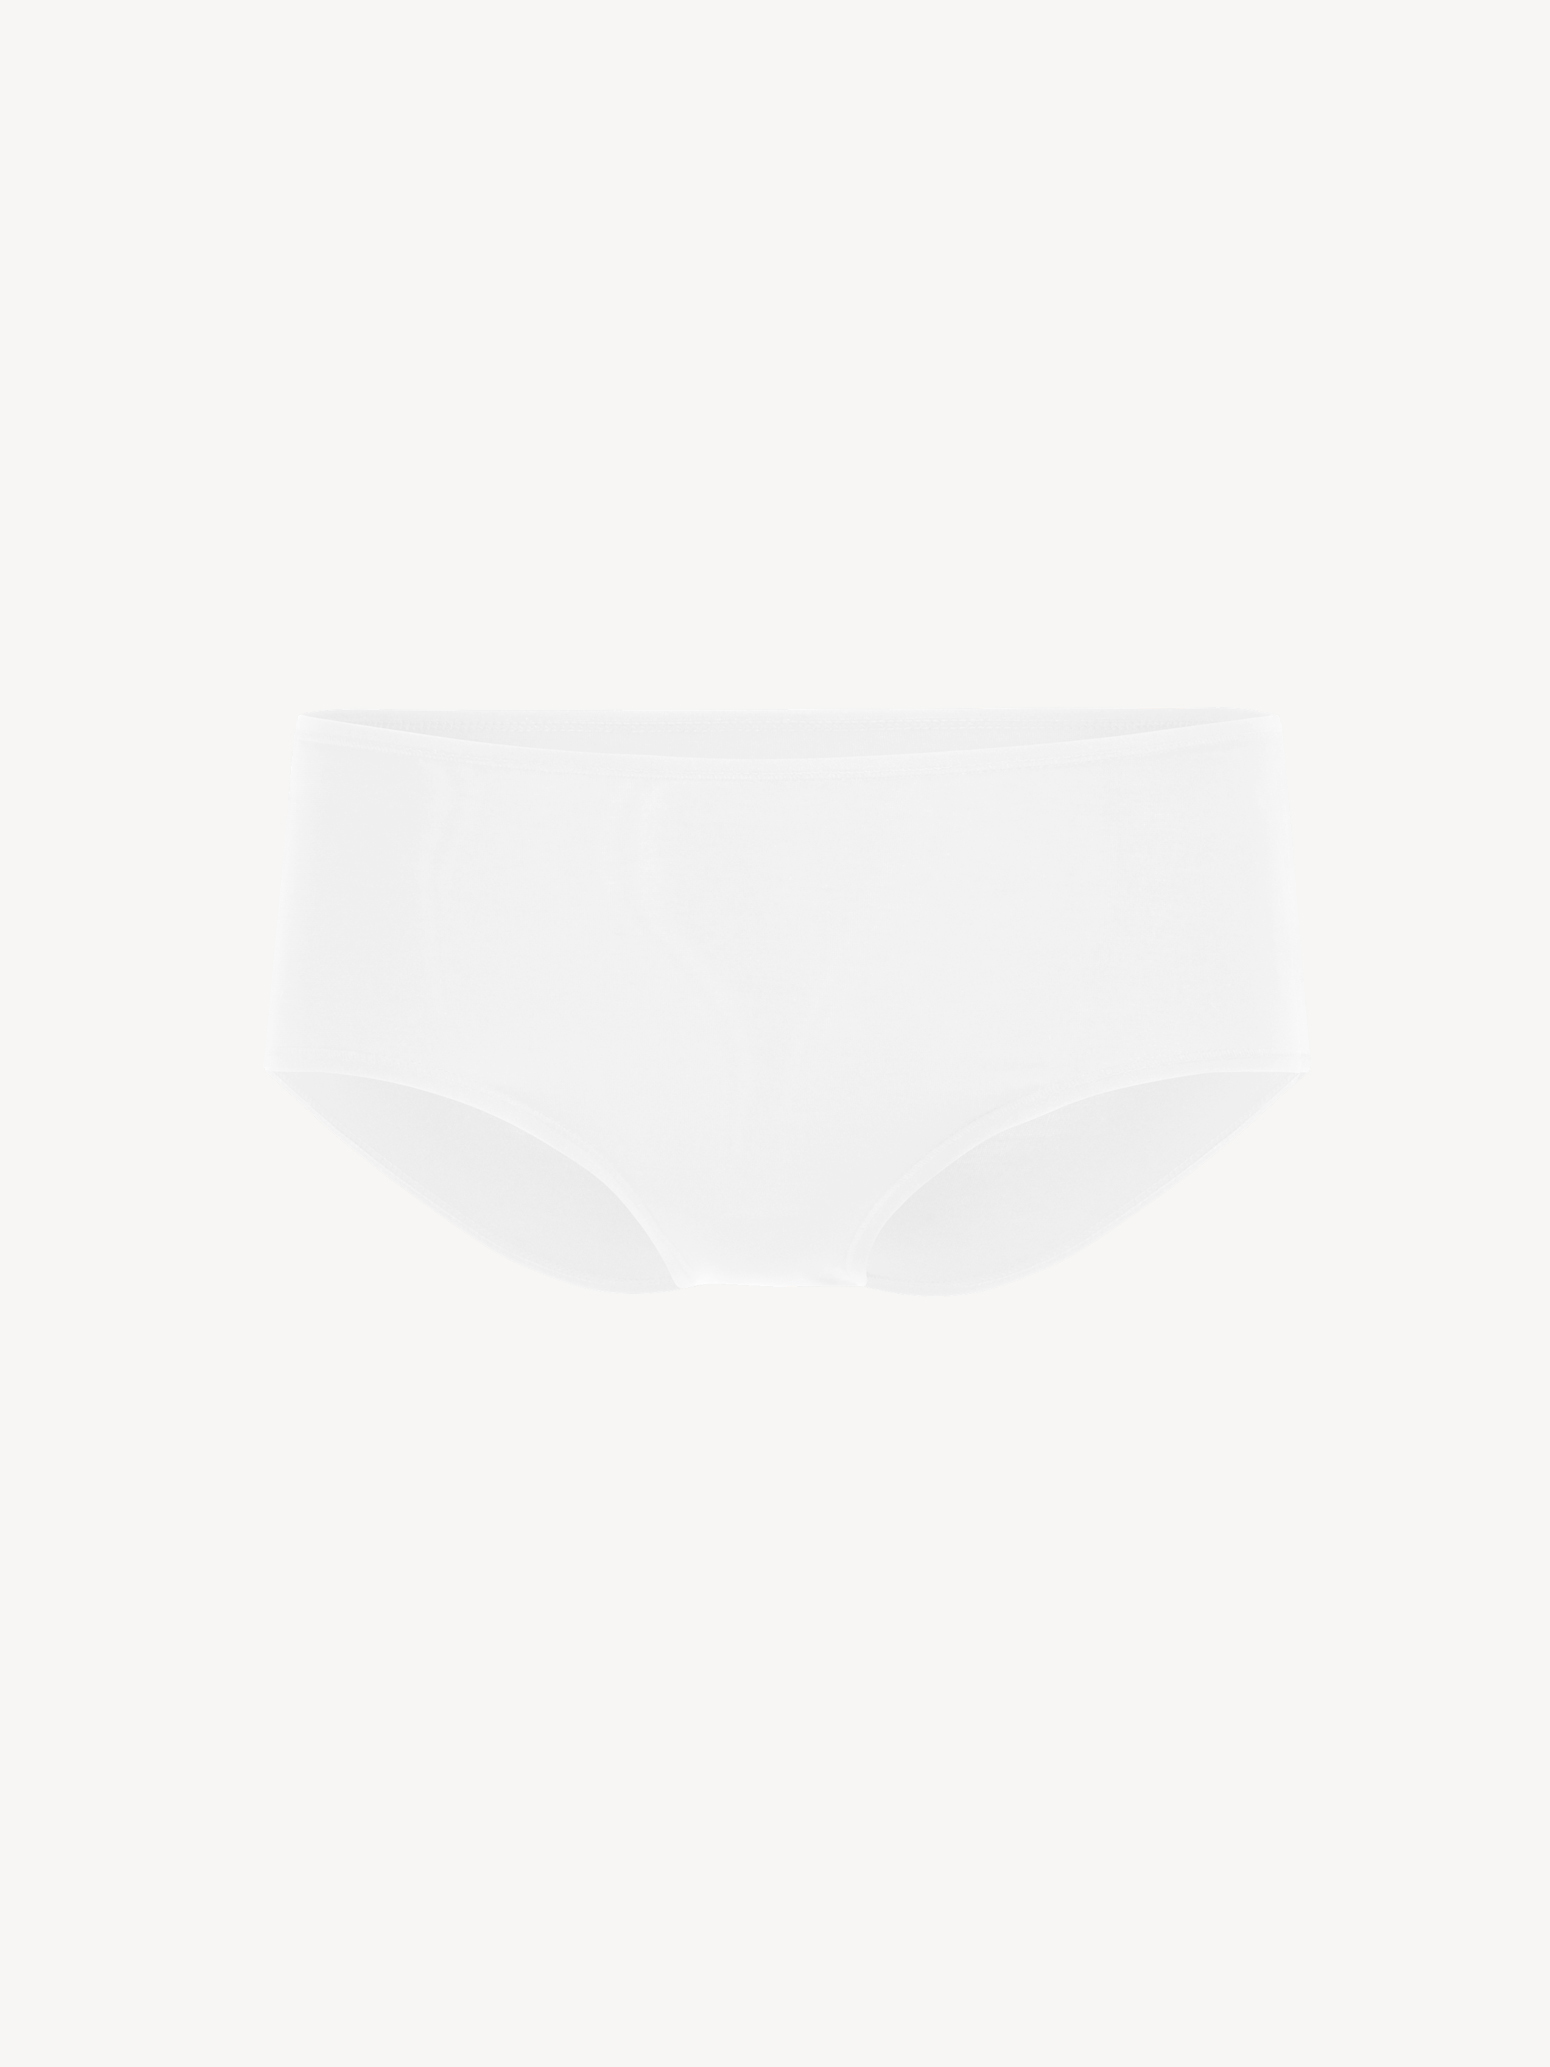 Bra - white TAW0192-10001: Buy Tamaris Underwear online!